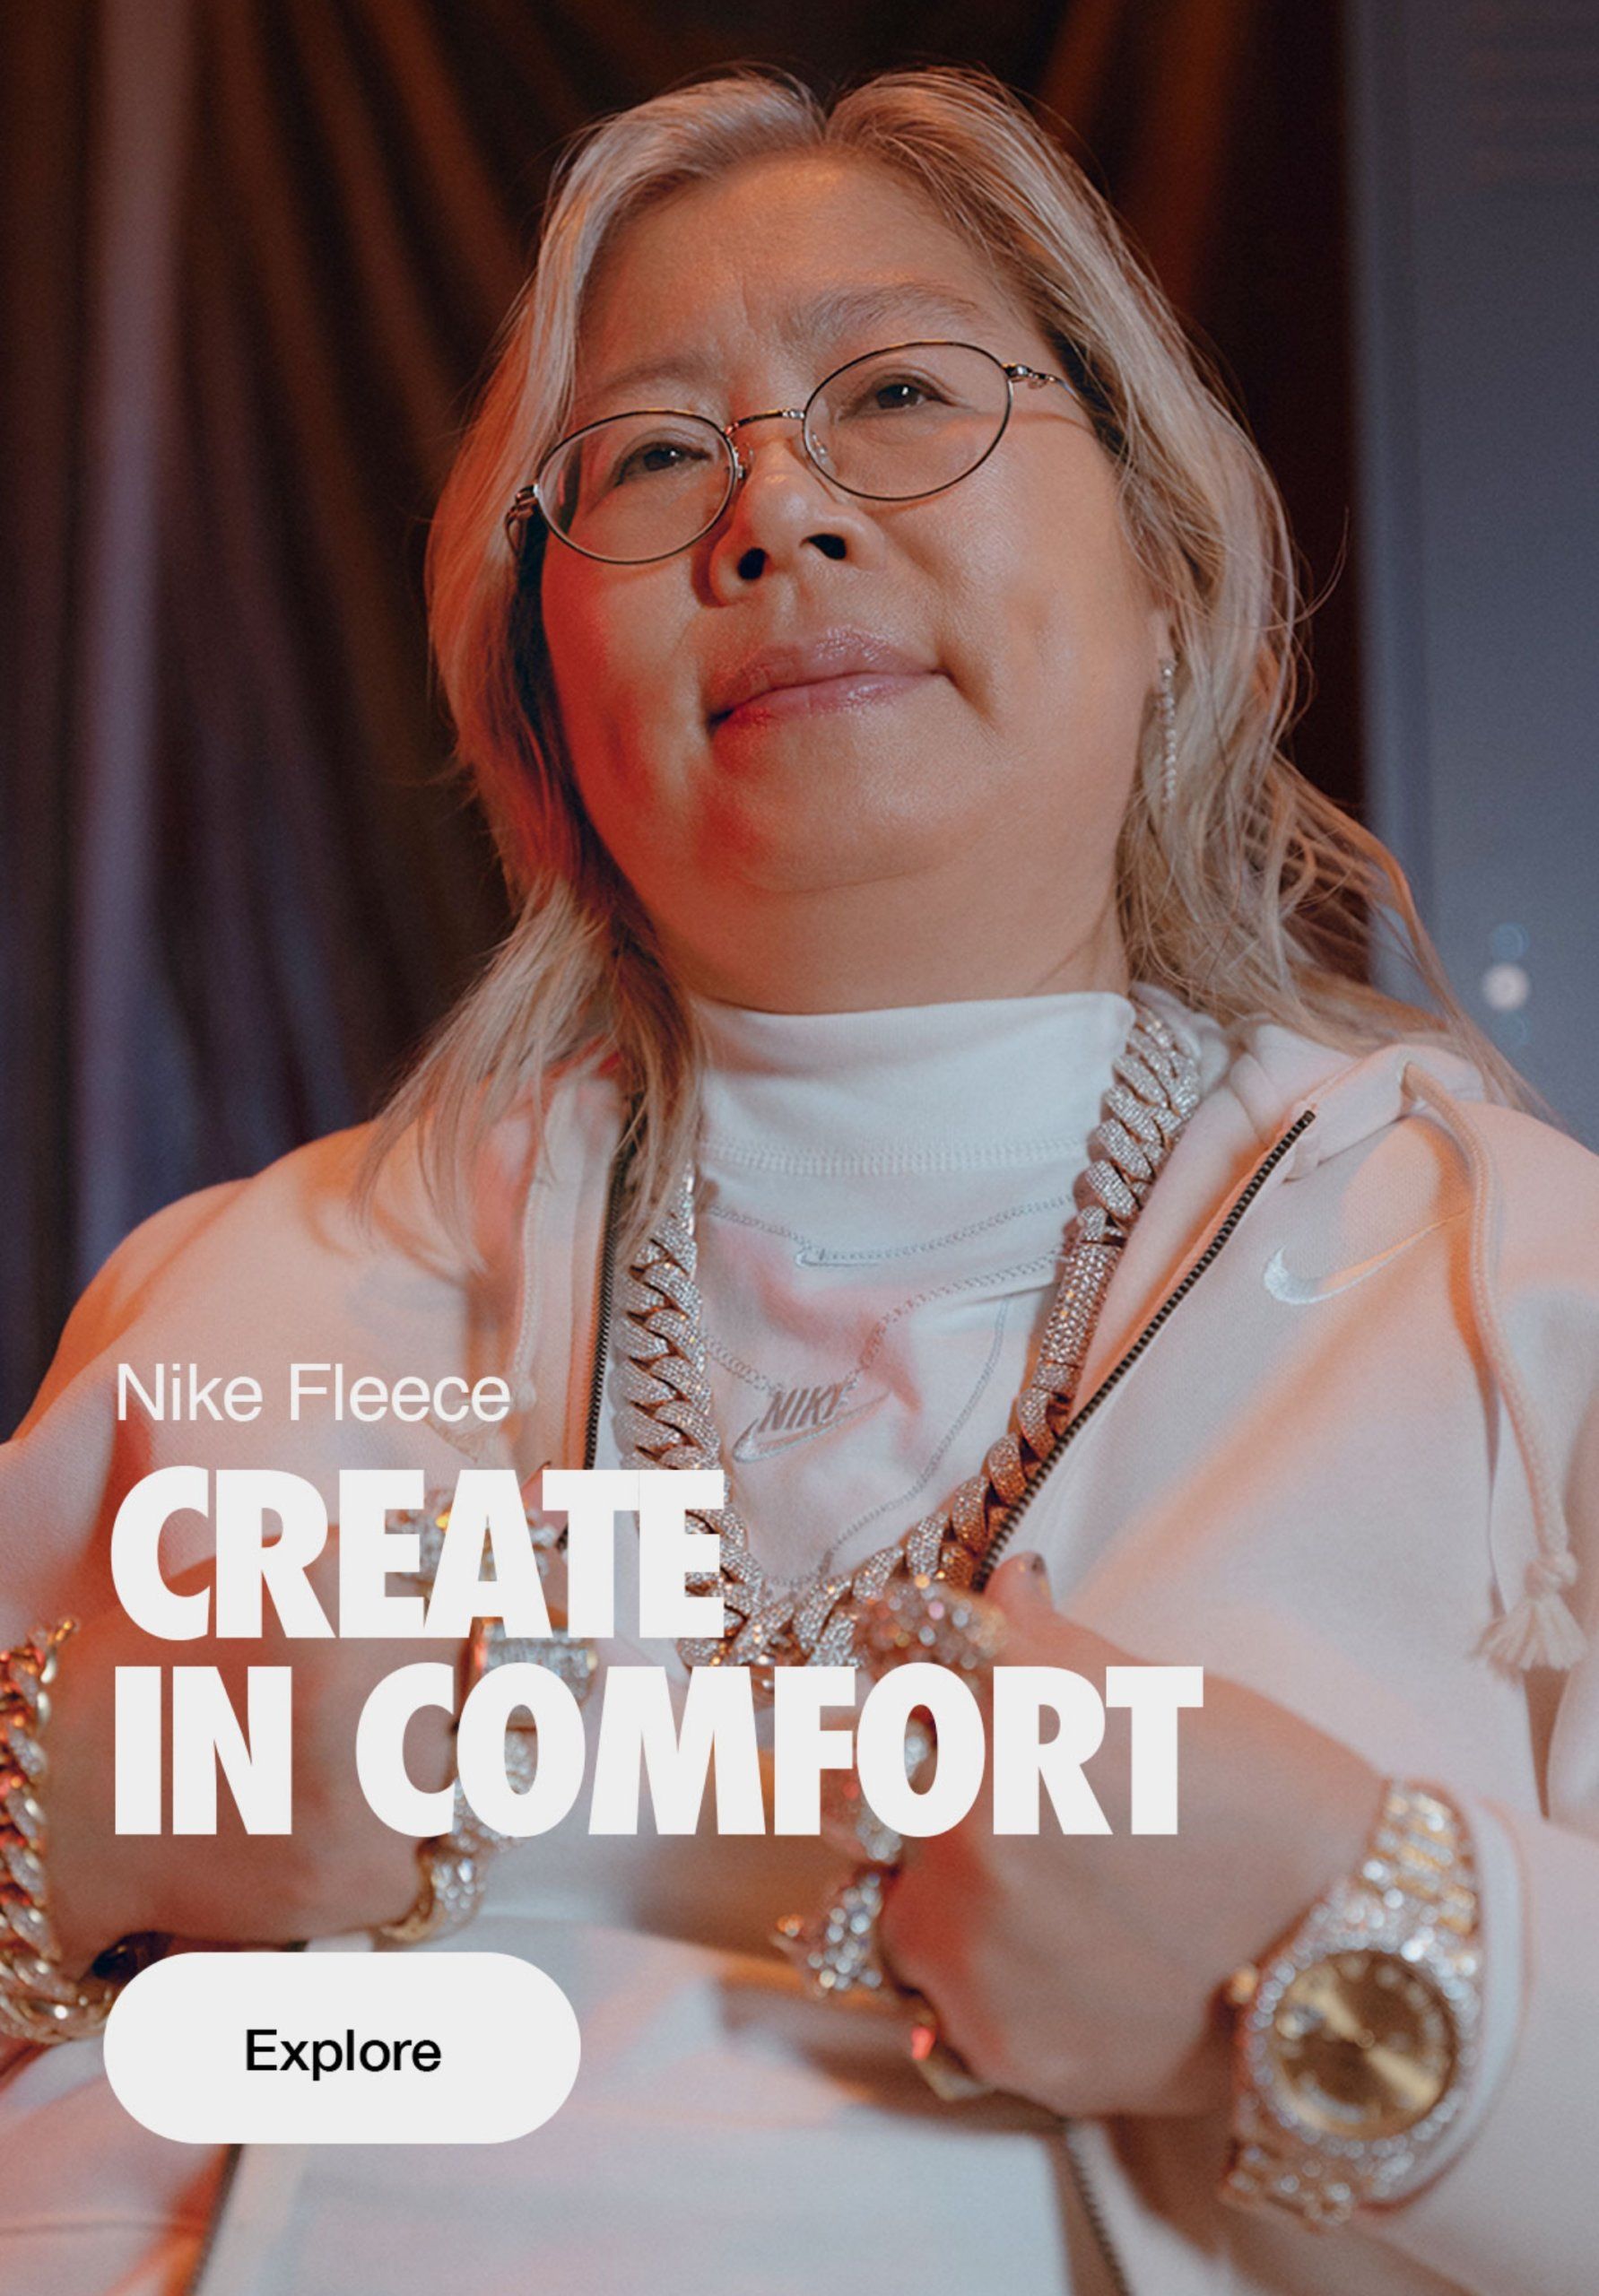 Nike Fleece - Create in comfort